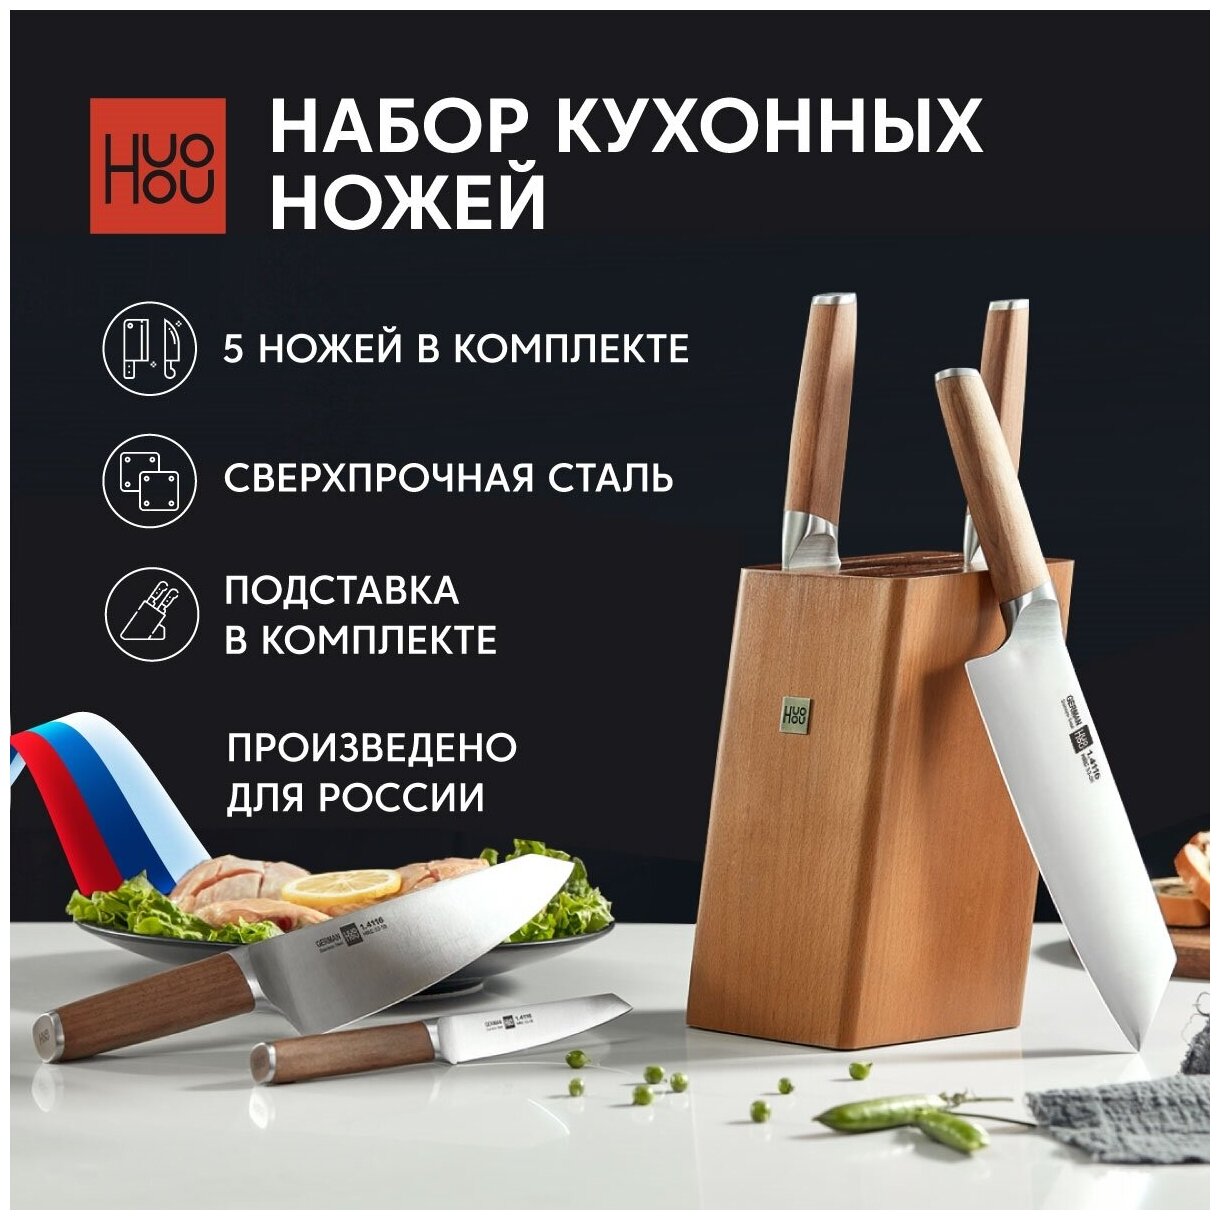 Набор кухонных ножей из сверхпрочной стали (5 ножей + подставка) HuoHou (HU0158), русская версия, коричневый